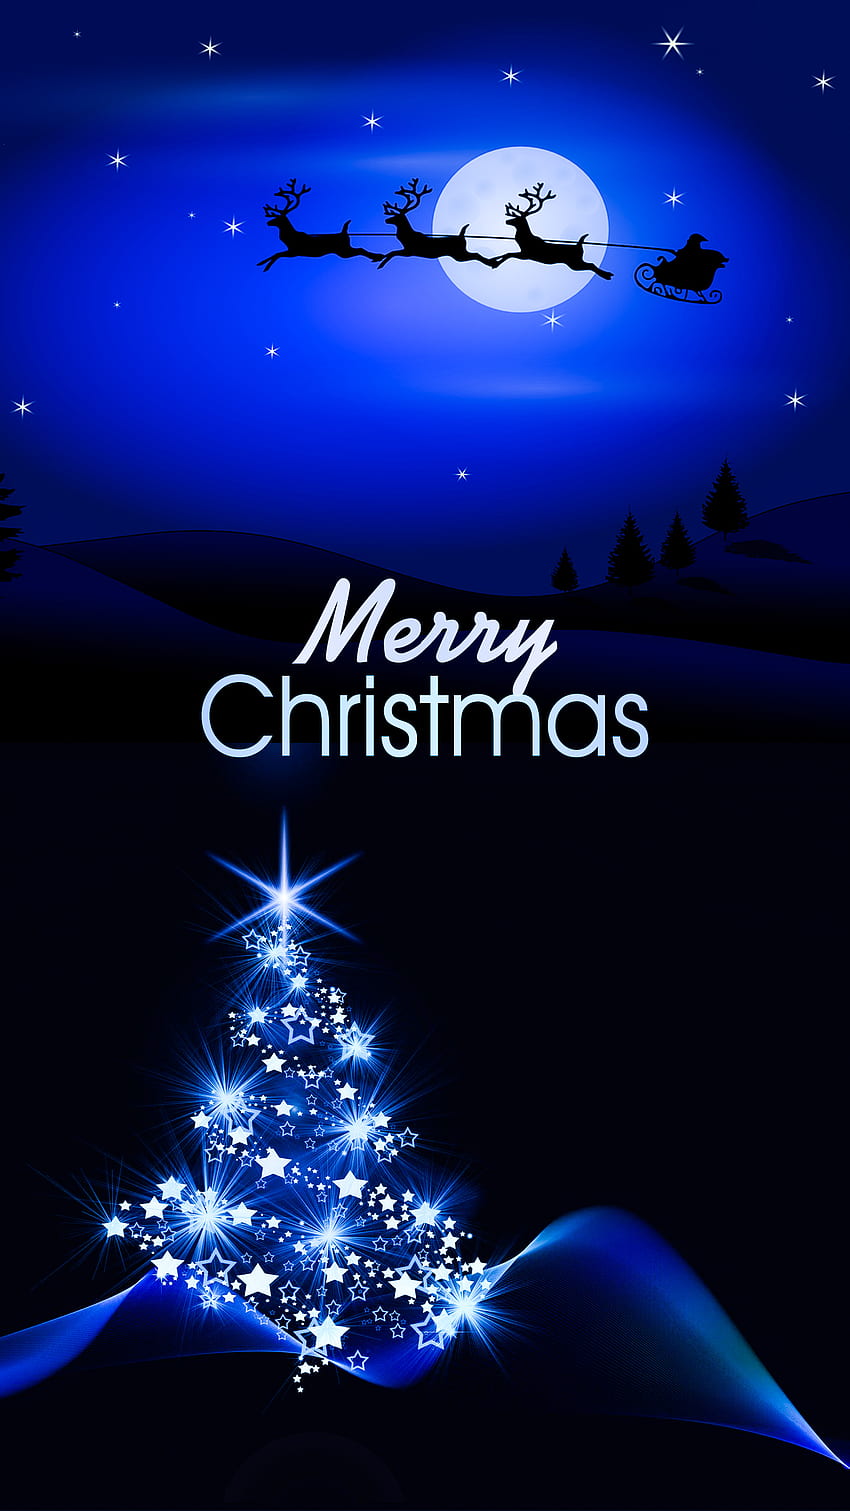 メリー クリスマス、メリー クリスマス サンタ、クリスマス ツリー、夜、アンドロイド、メリー クリスマス、アモルド、月、青、メリー クリスマス、暗い、iphone、メリー クリスマス テキスト、サンタ クロース HD電話の壁紙